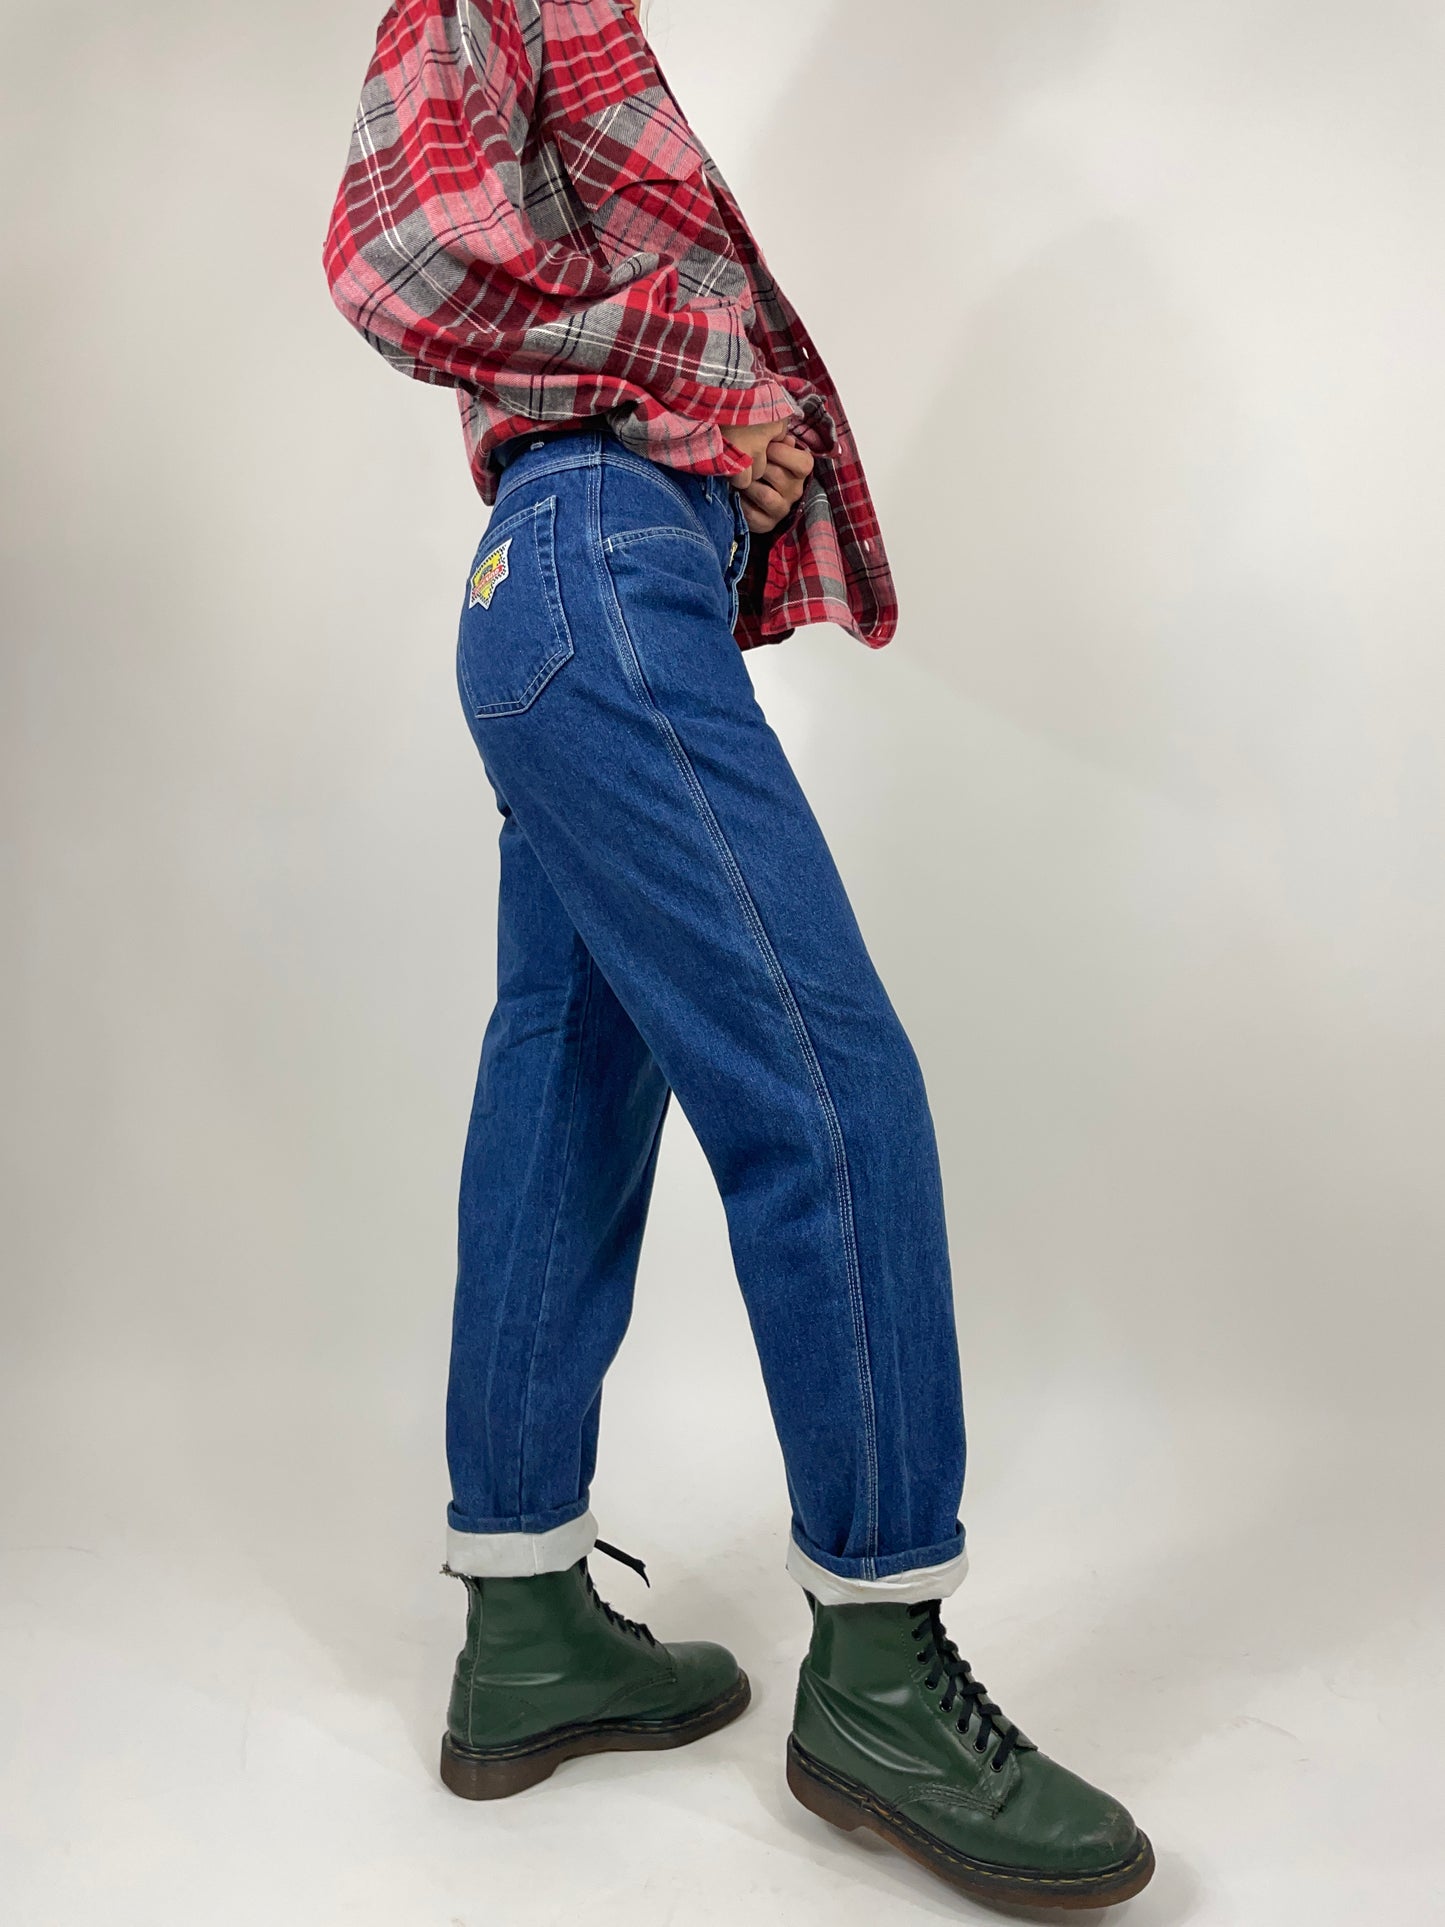 jeans-coverino-anni-80